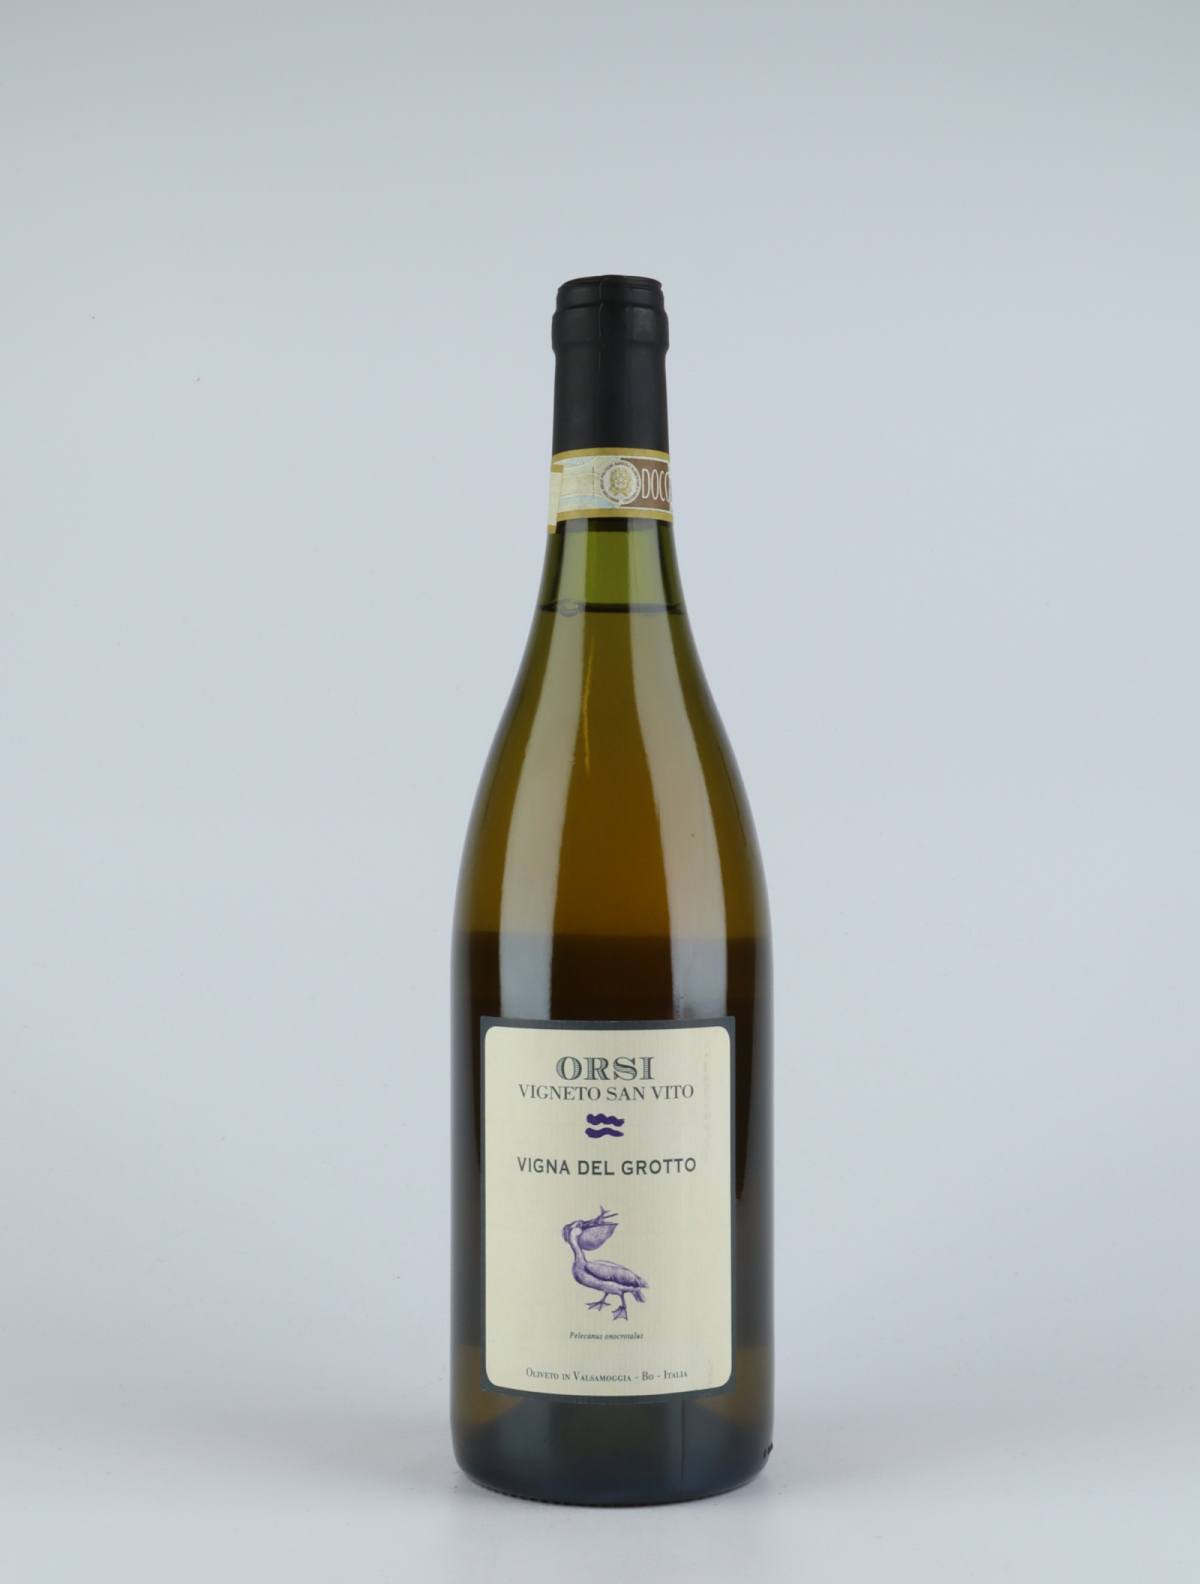 A bottle 2017 Vigna del Grotto White wine from Orsi - San Vito, Emilia-Romagna in Italy